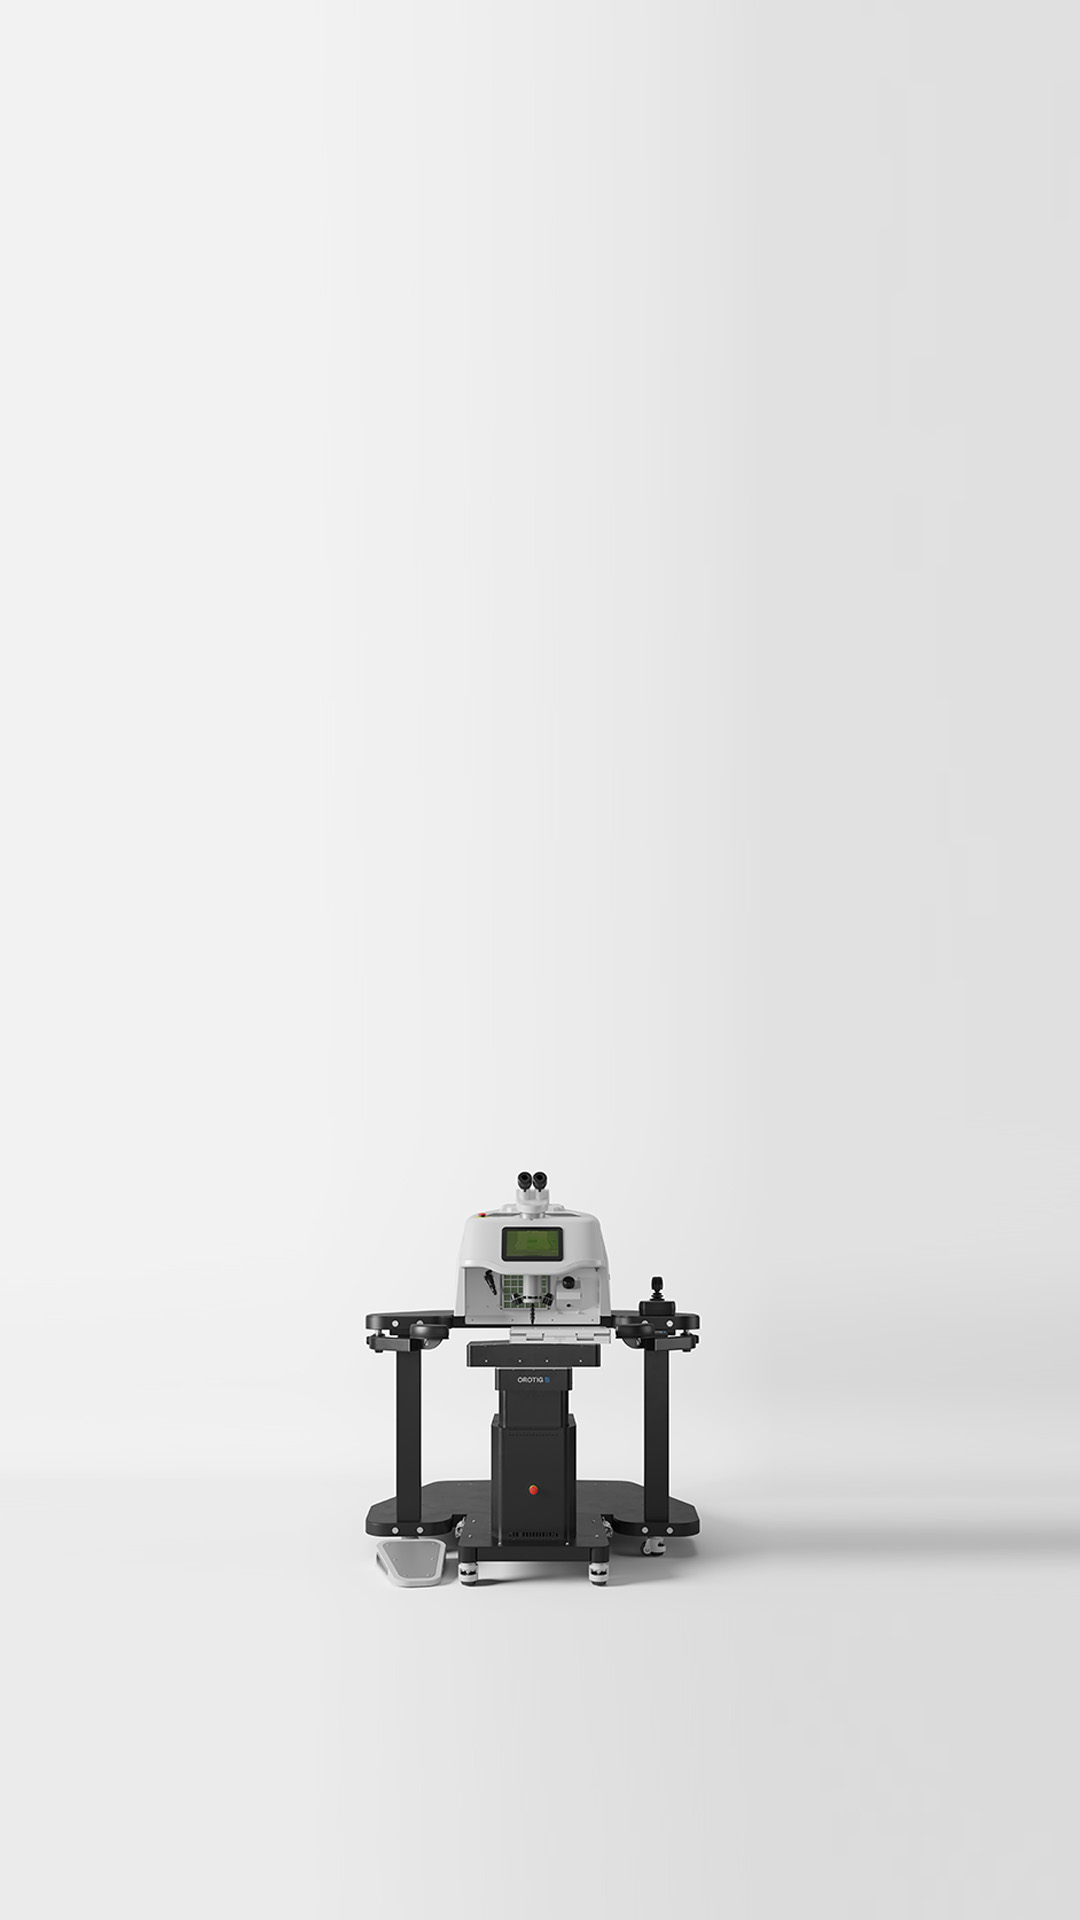 La machine de soudage laser Aries d’Orotig offre des performances élevées et la plus haute qualité sur des pièces de grande taille, même en cycle continu.